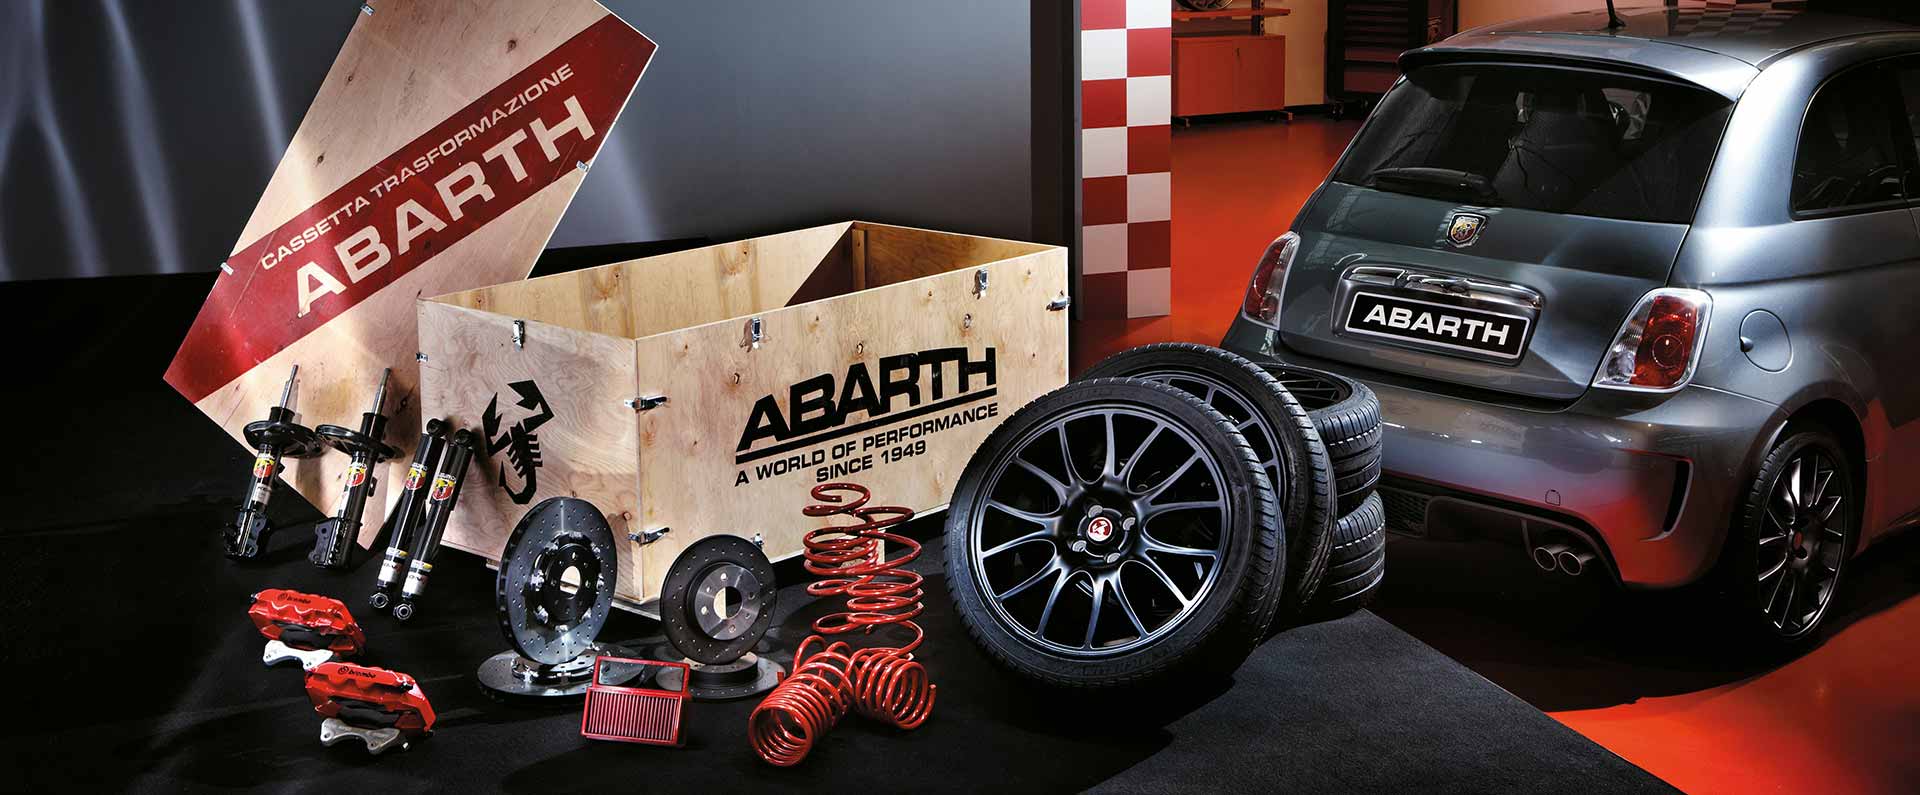 Sada Brzdový systém Abarth Brembo + kola 695